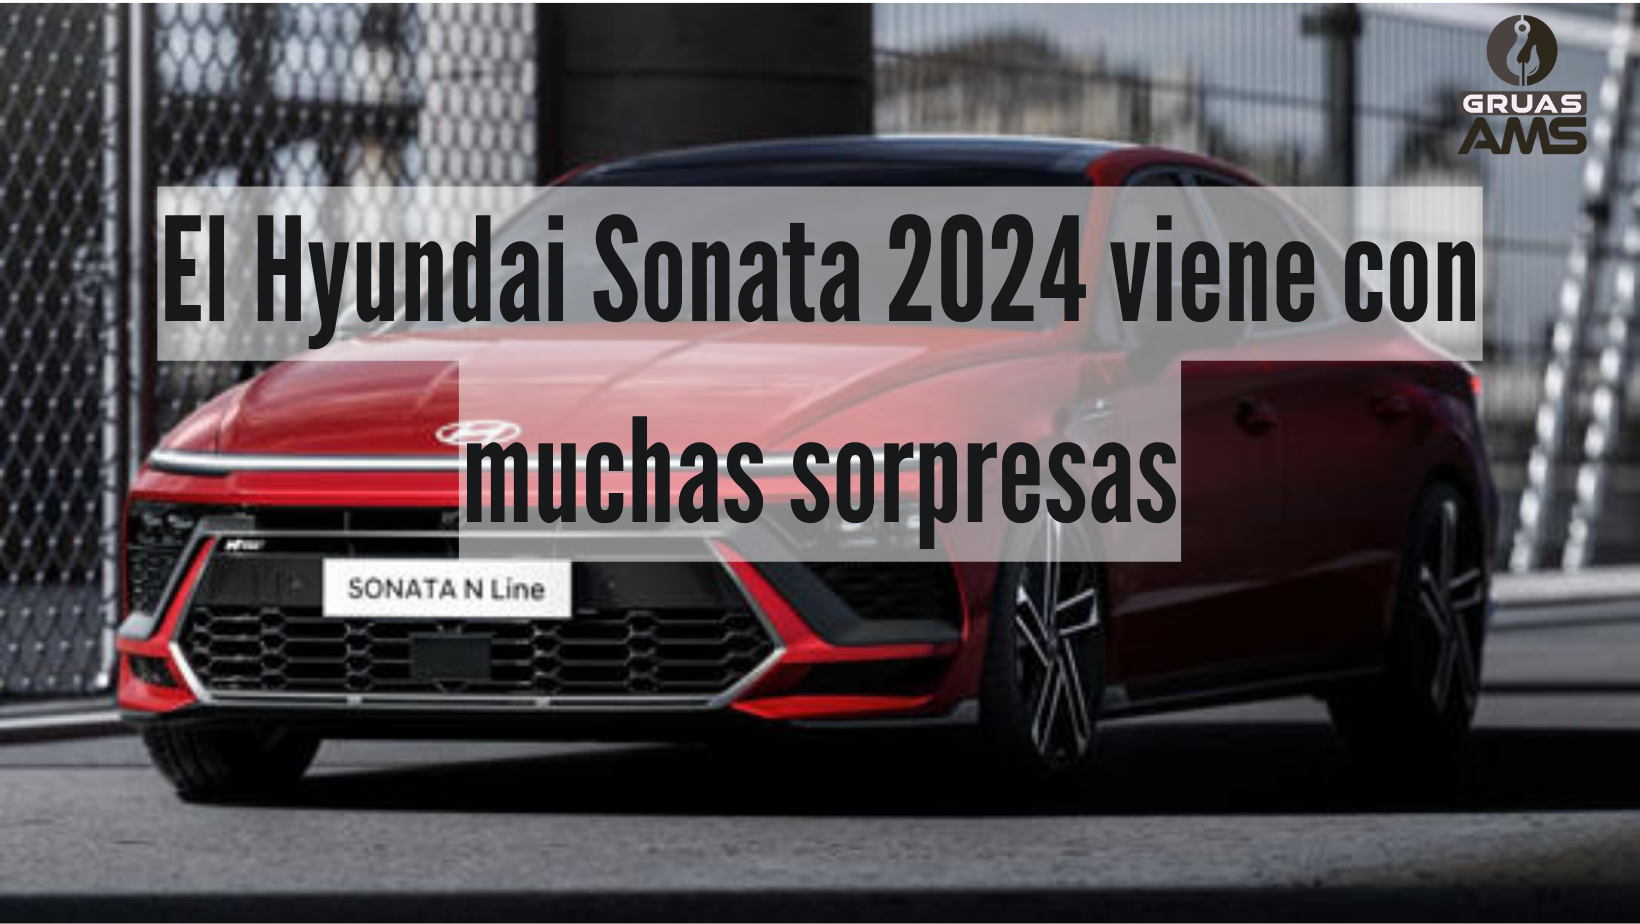 El Hyundai Sonata 2024 viene con muchas sorpresas